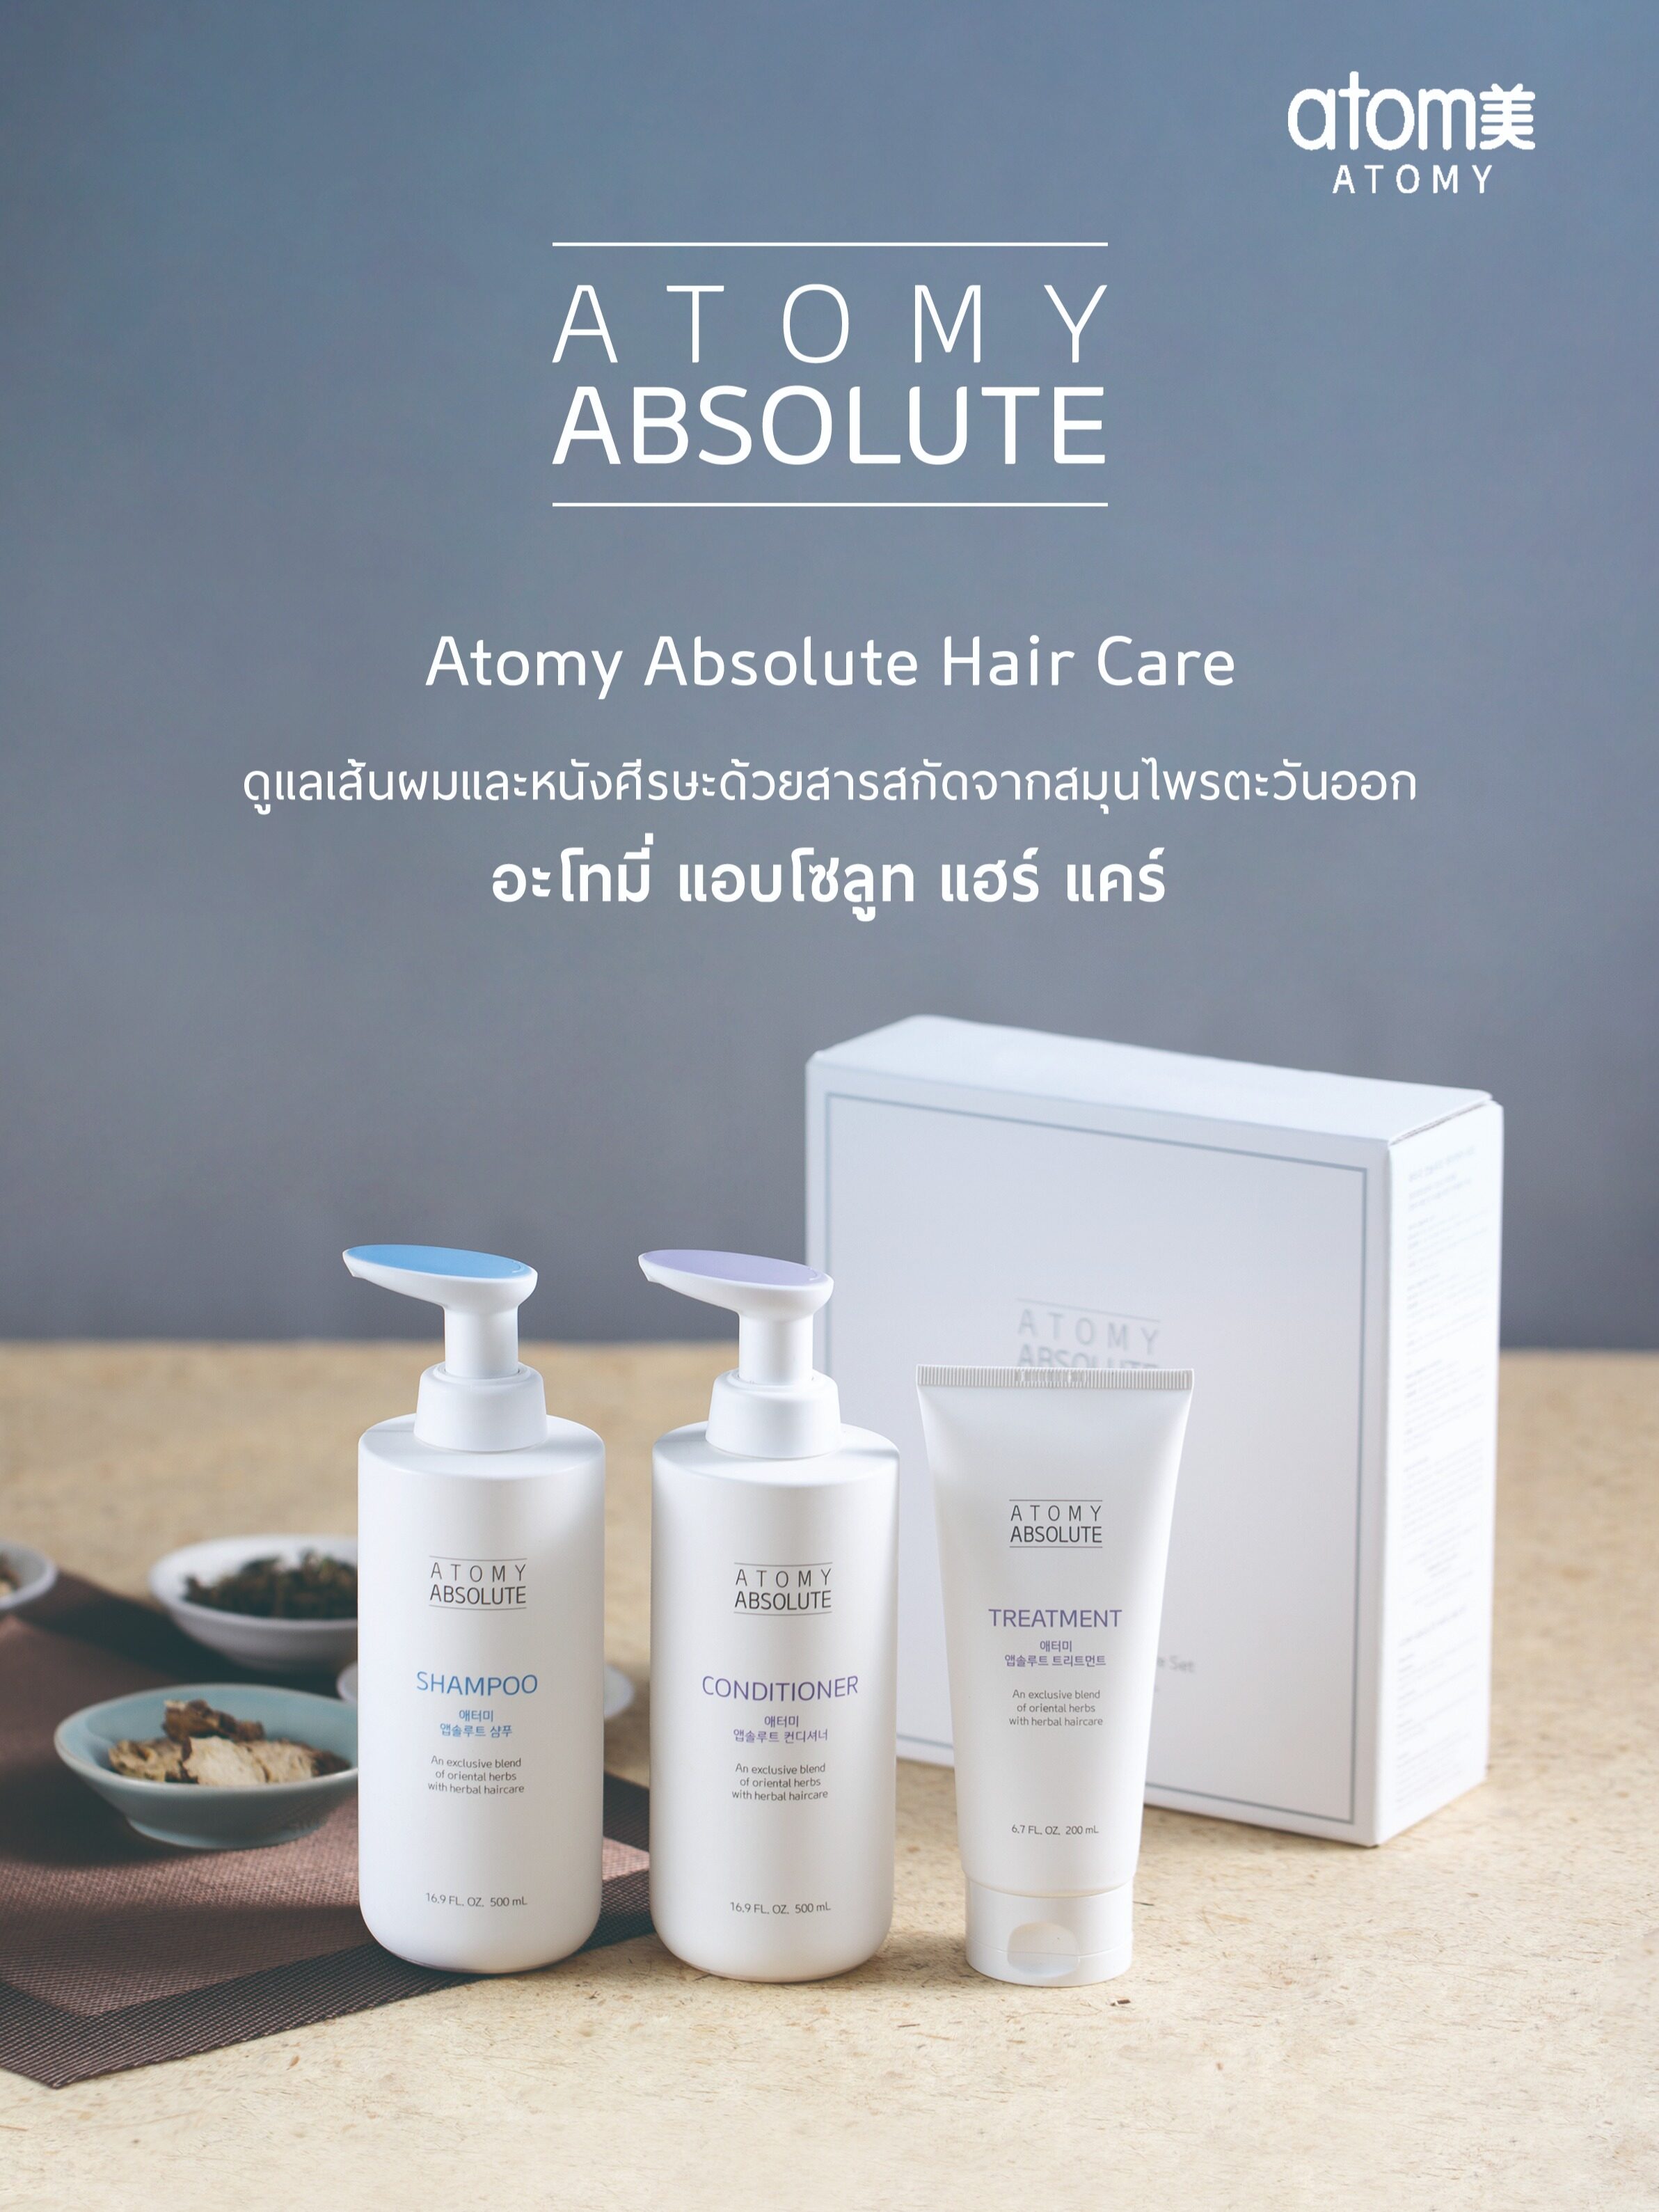 อะโทมี่ แอบโซลูท แฮร์ แคร์ เซ็ต (Atomy Absolute Hair Care Set)